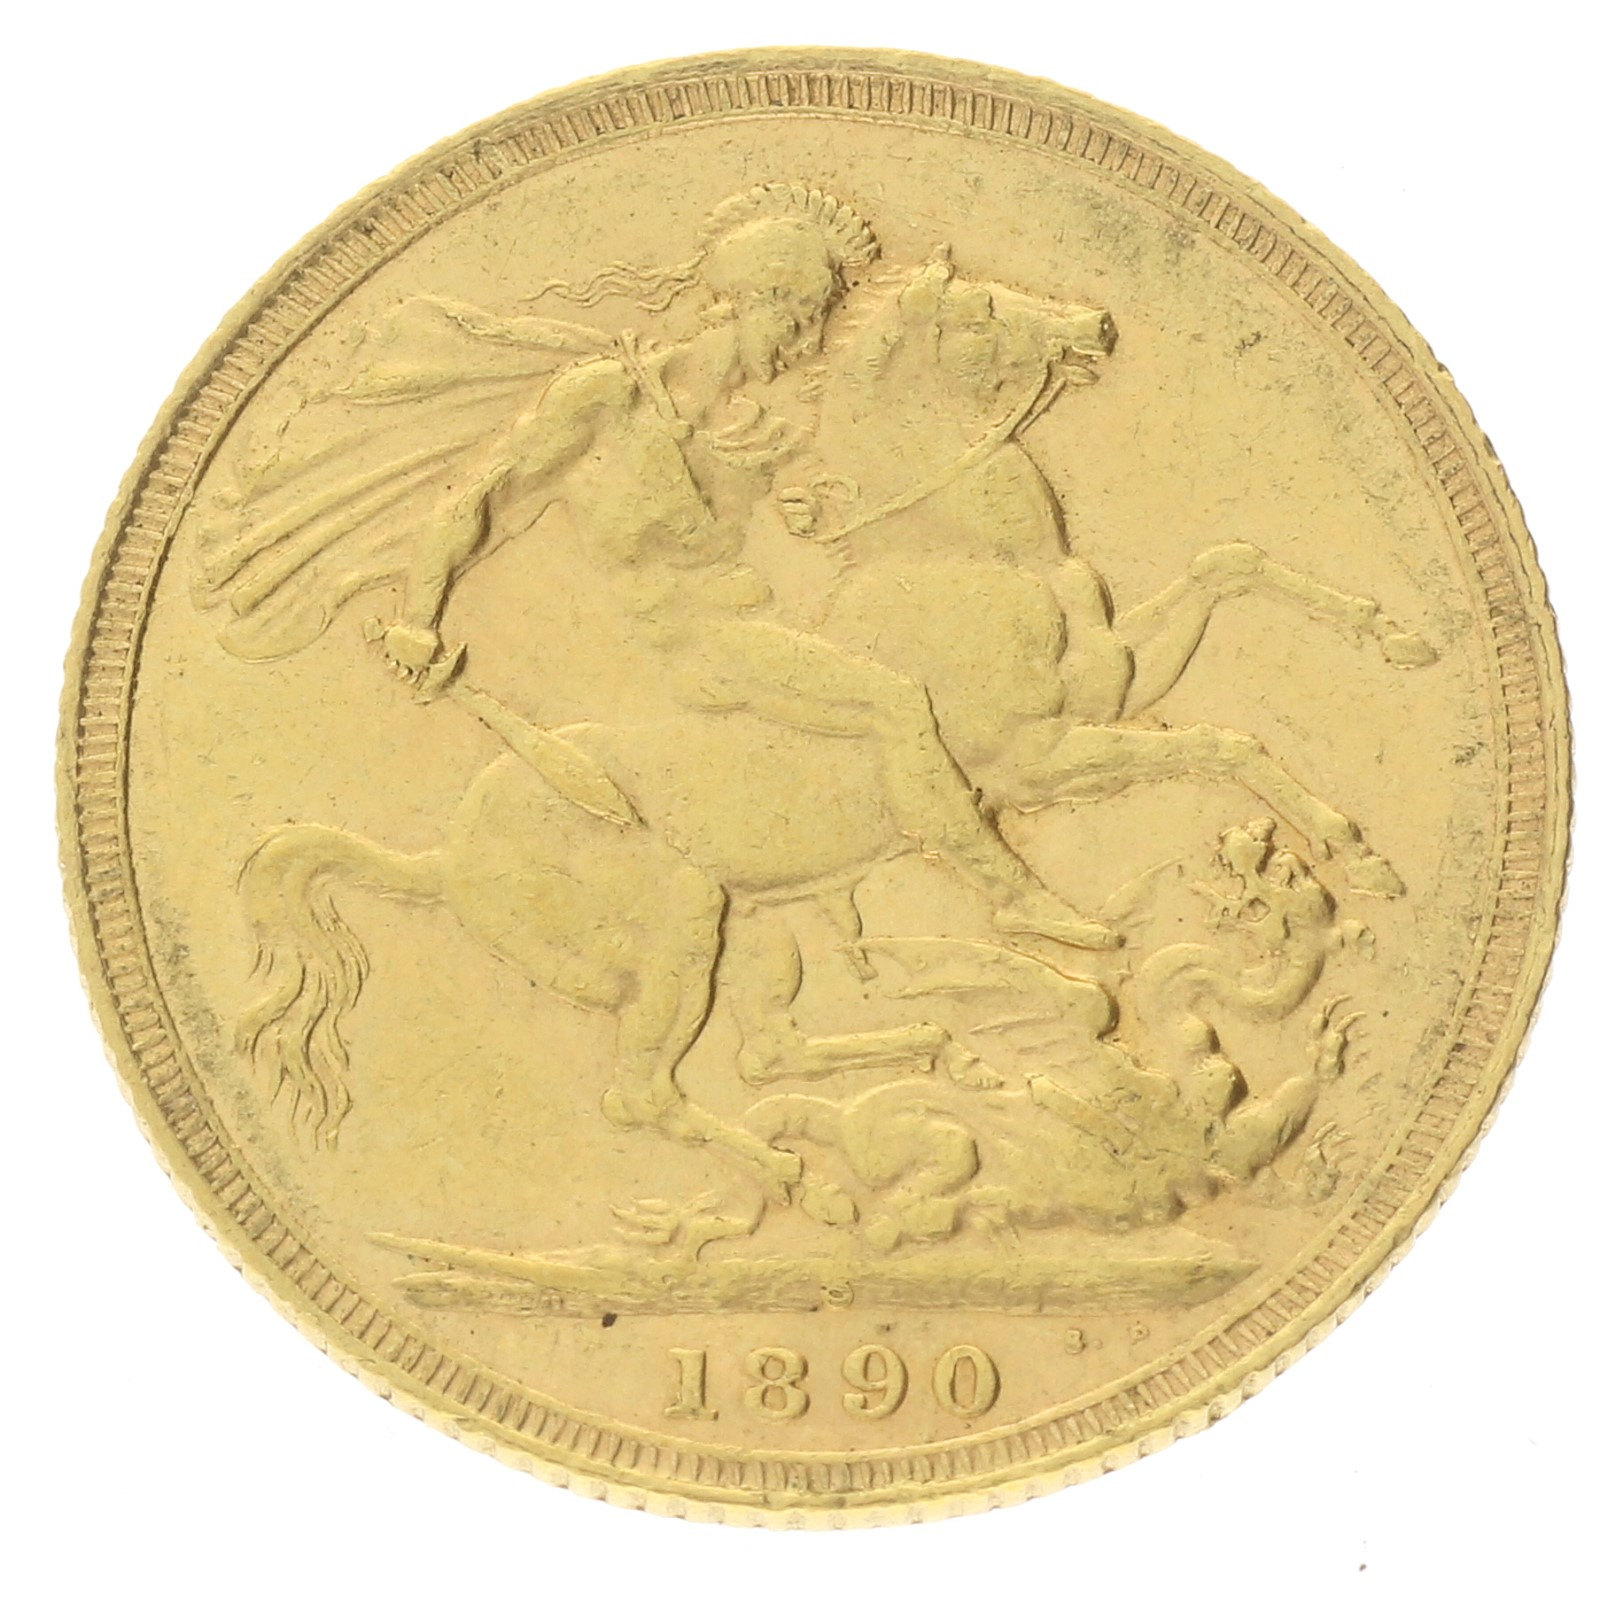 Australia - 1 sovereign - 1890 - S - Victoria